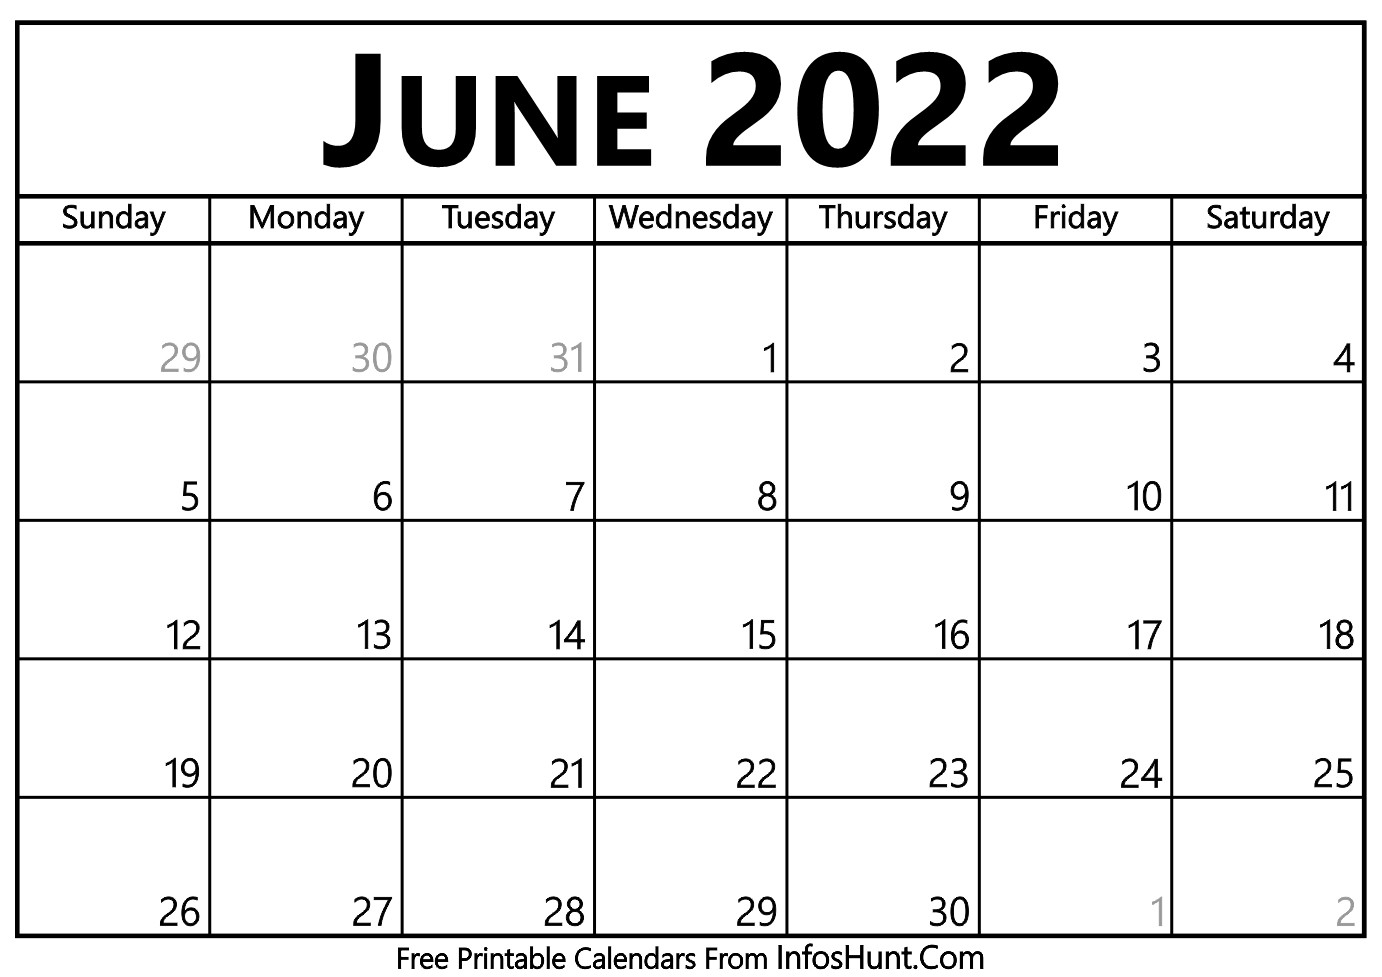 June 2022 Catholic Calendar | Calendar Template 2022  Catholic Printable Calendar 2022